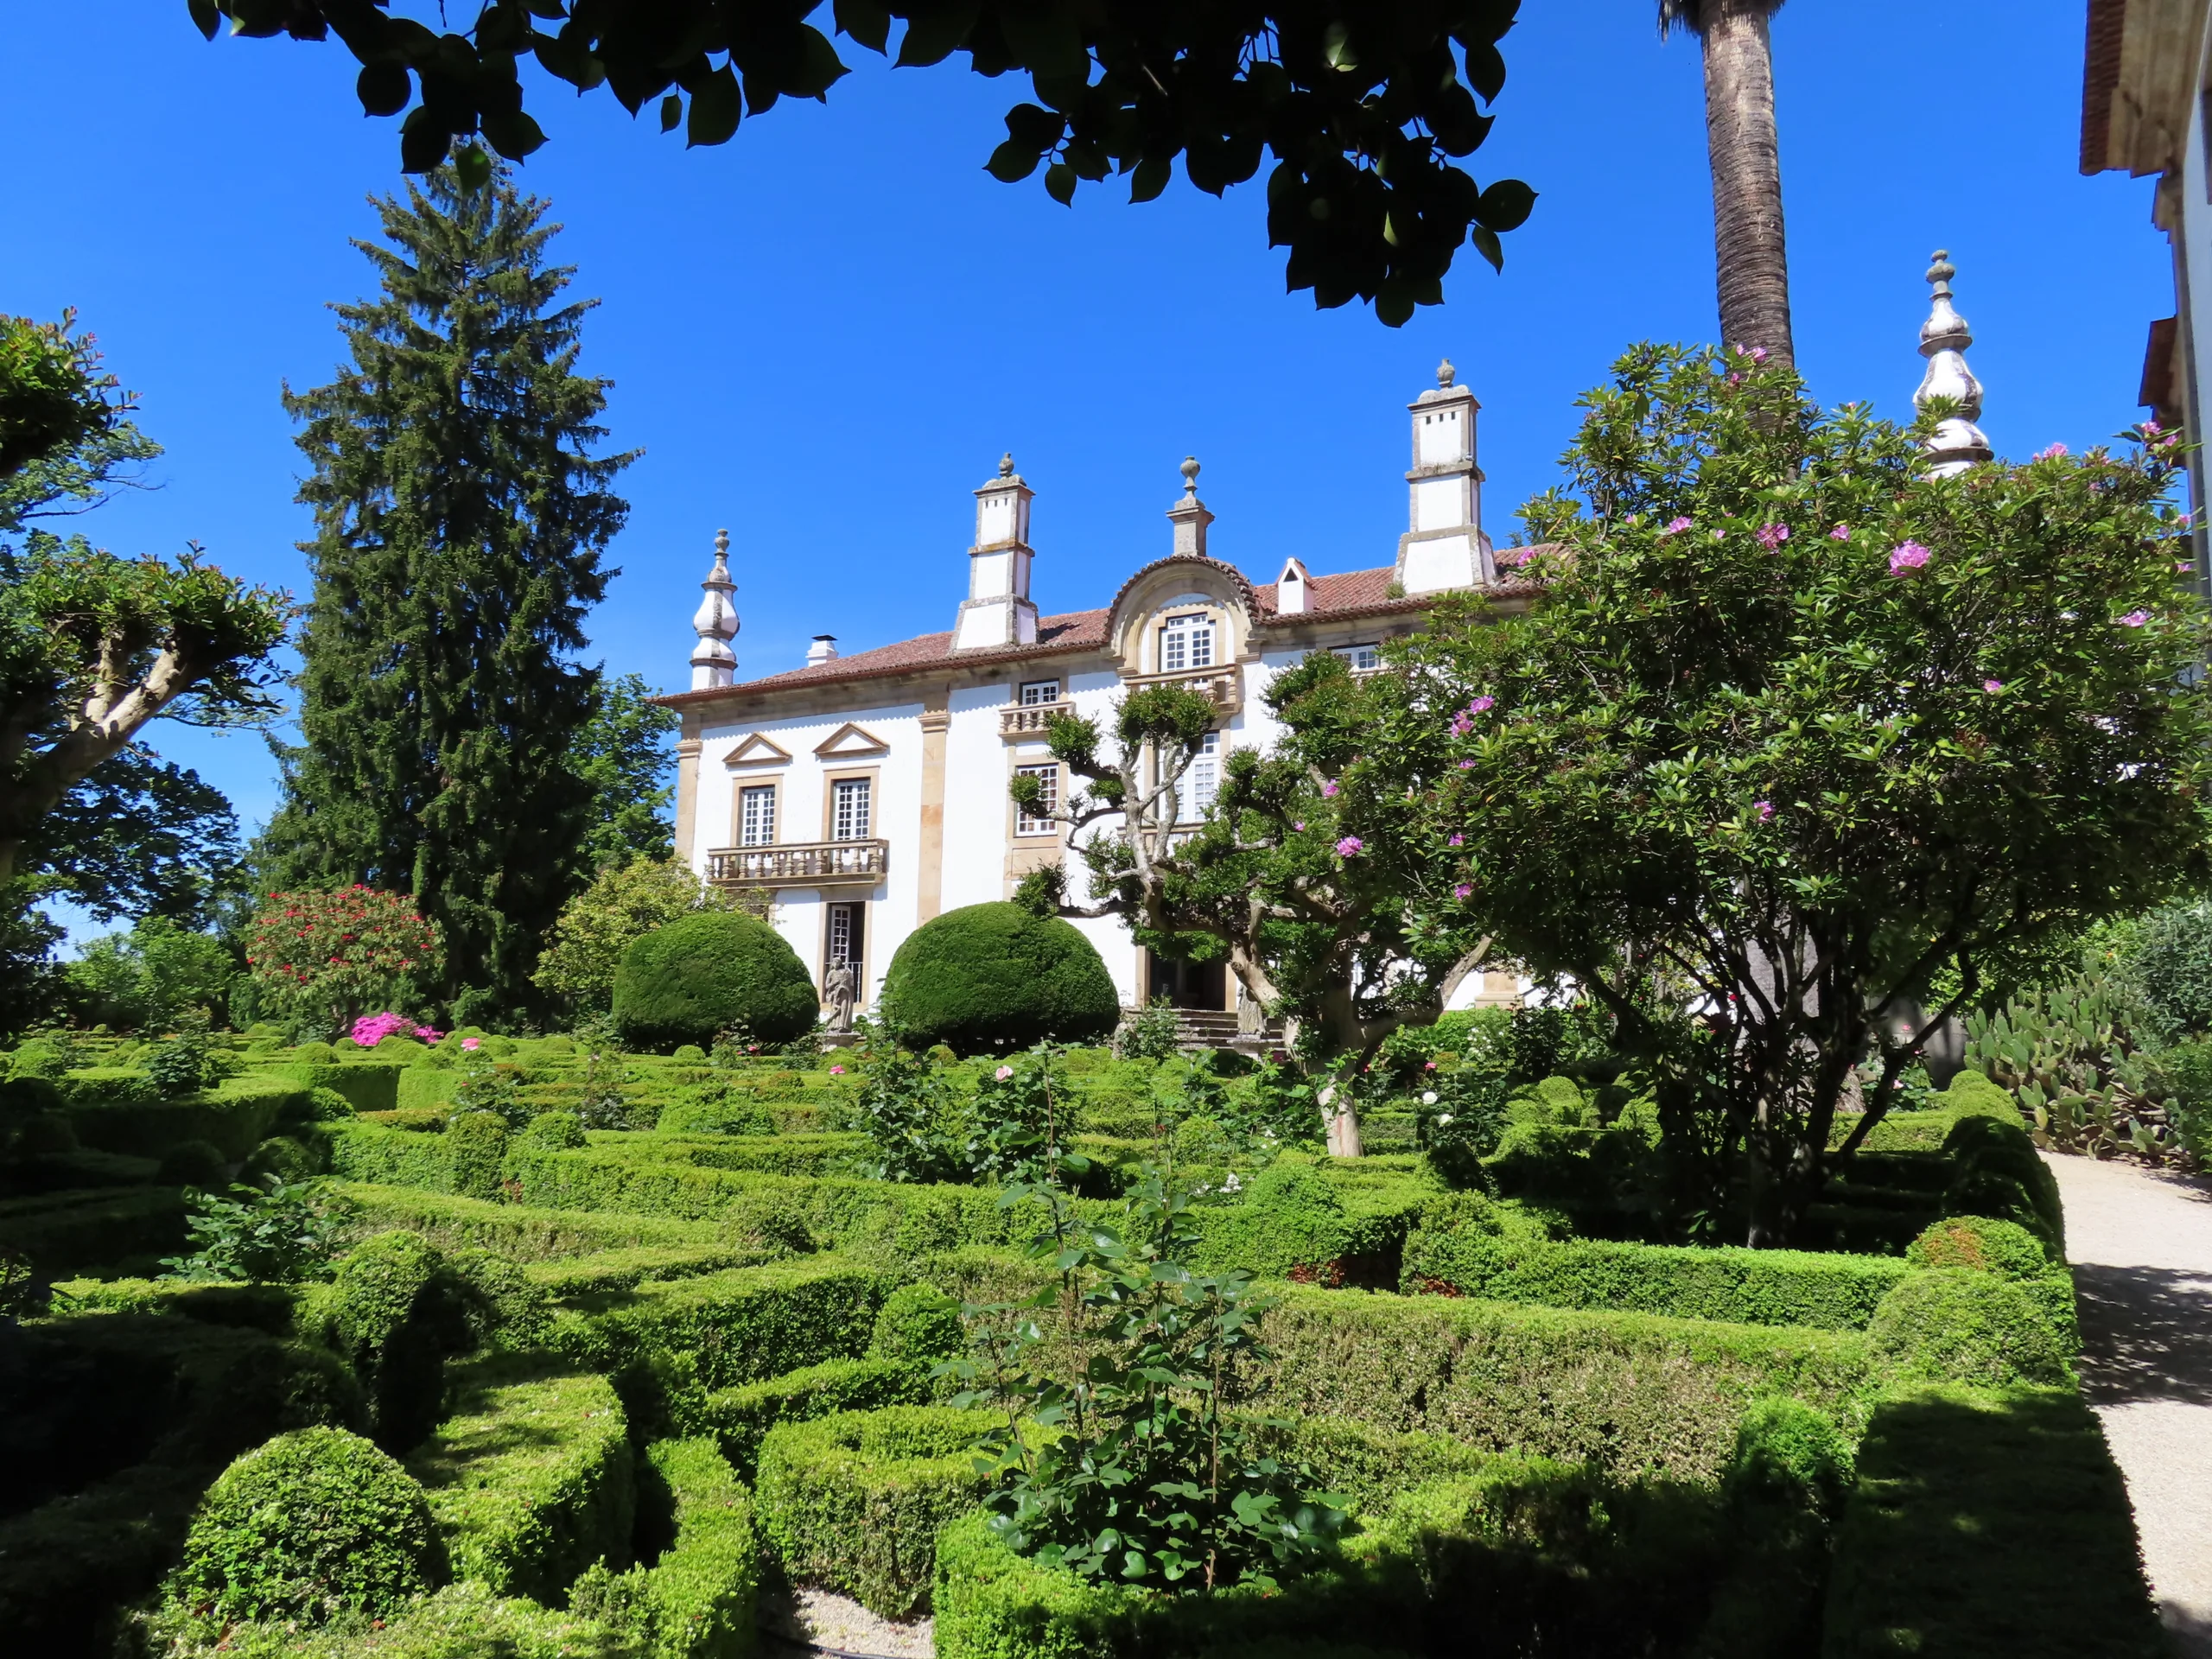 Real traveller photo of Casa Mateus gardens